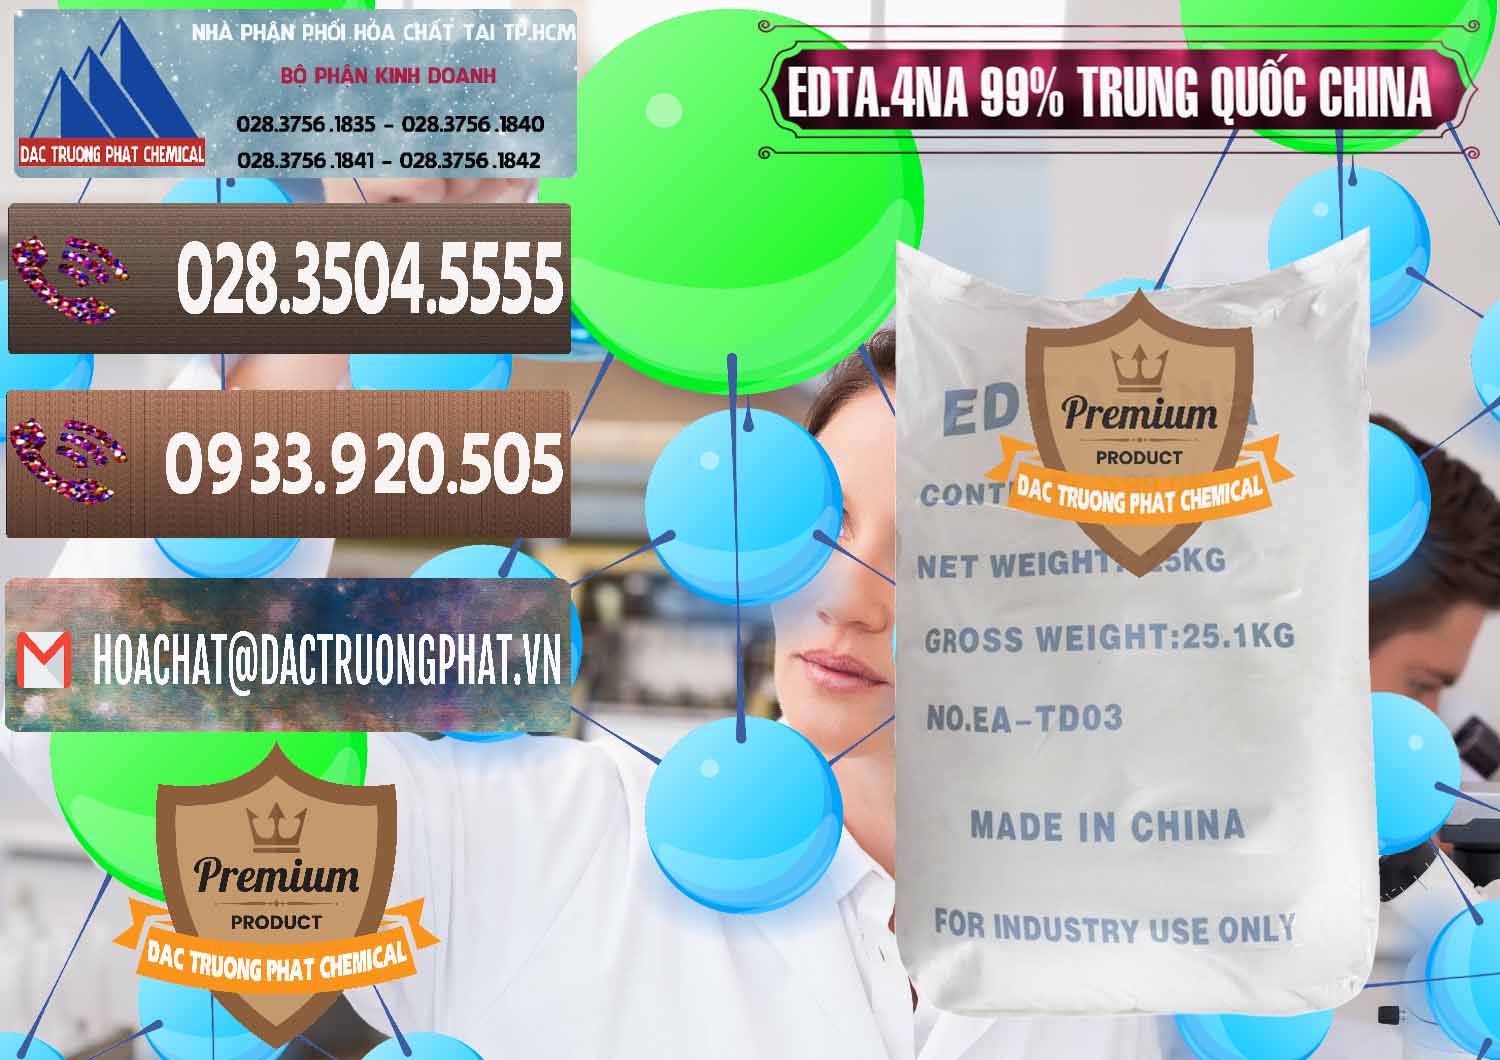 Đơn vị nhập khẩu - bán EDTA.4NA - EDTA Muối 99% Trung Quốc China - 0292 - Công ty cung cấp & phân phối hóa chất tại TP.HCM - hoachatviet.net